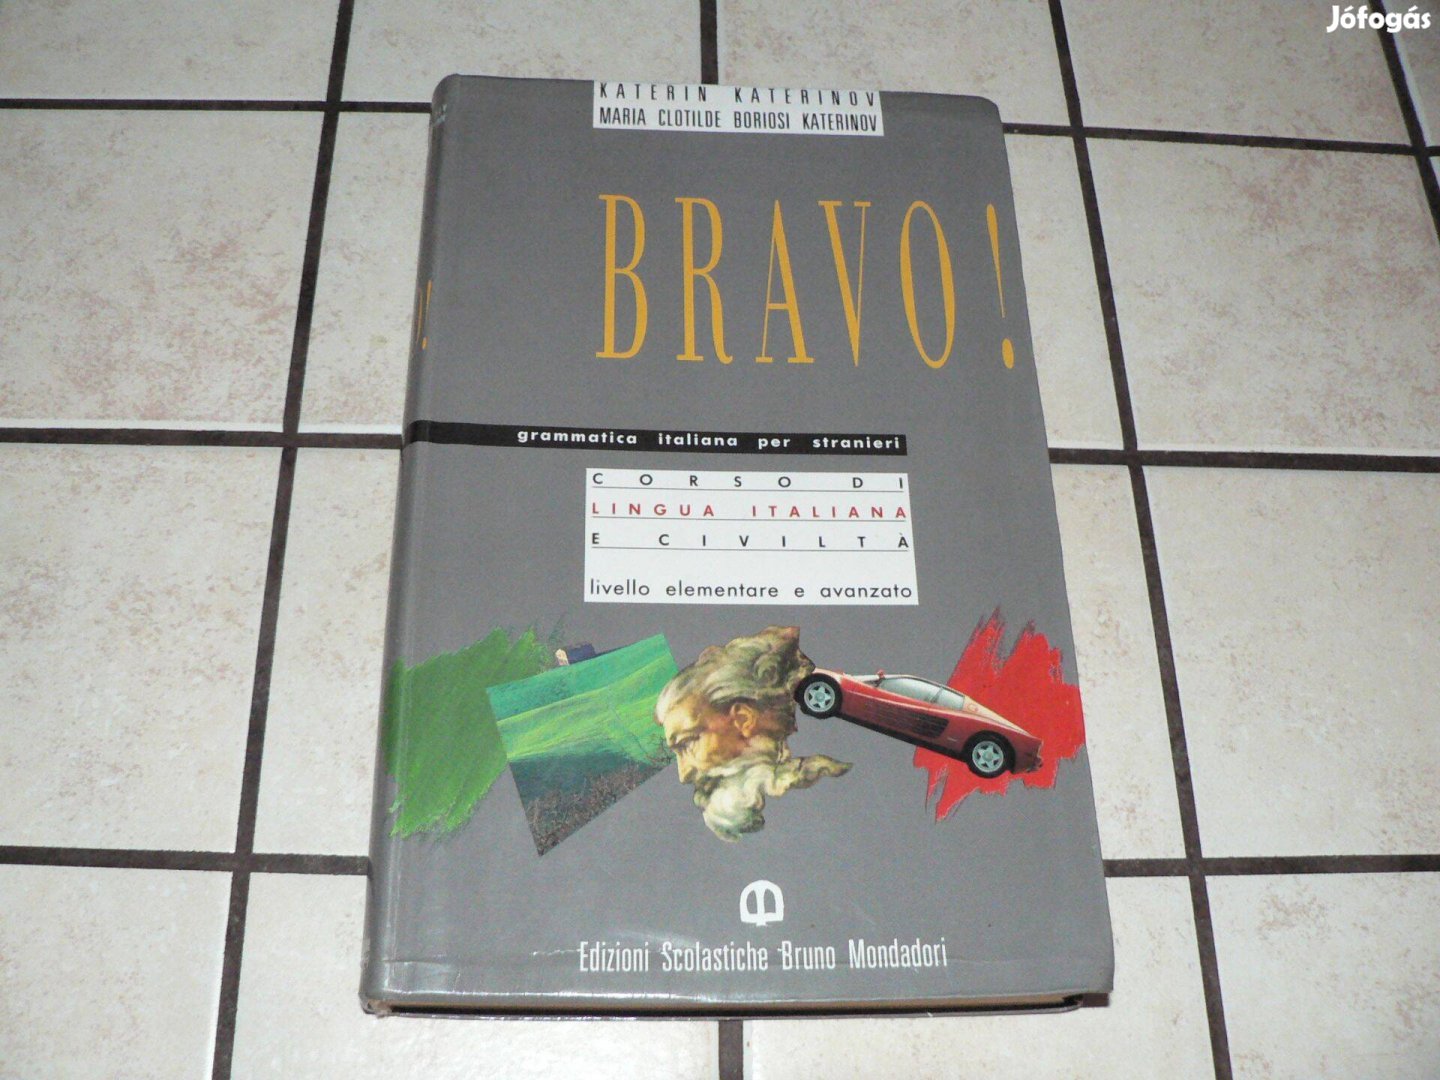 Katerinov: Bravo! Olasz nyelvtanfolyam+ a könyv MP3 hanganyaga